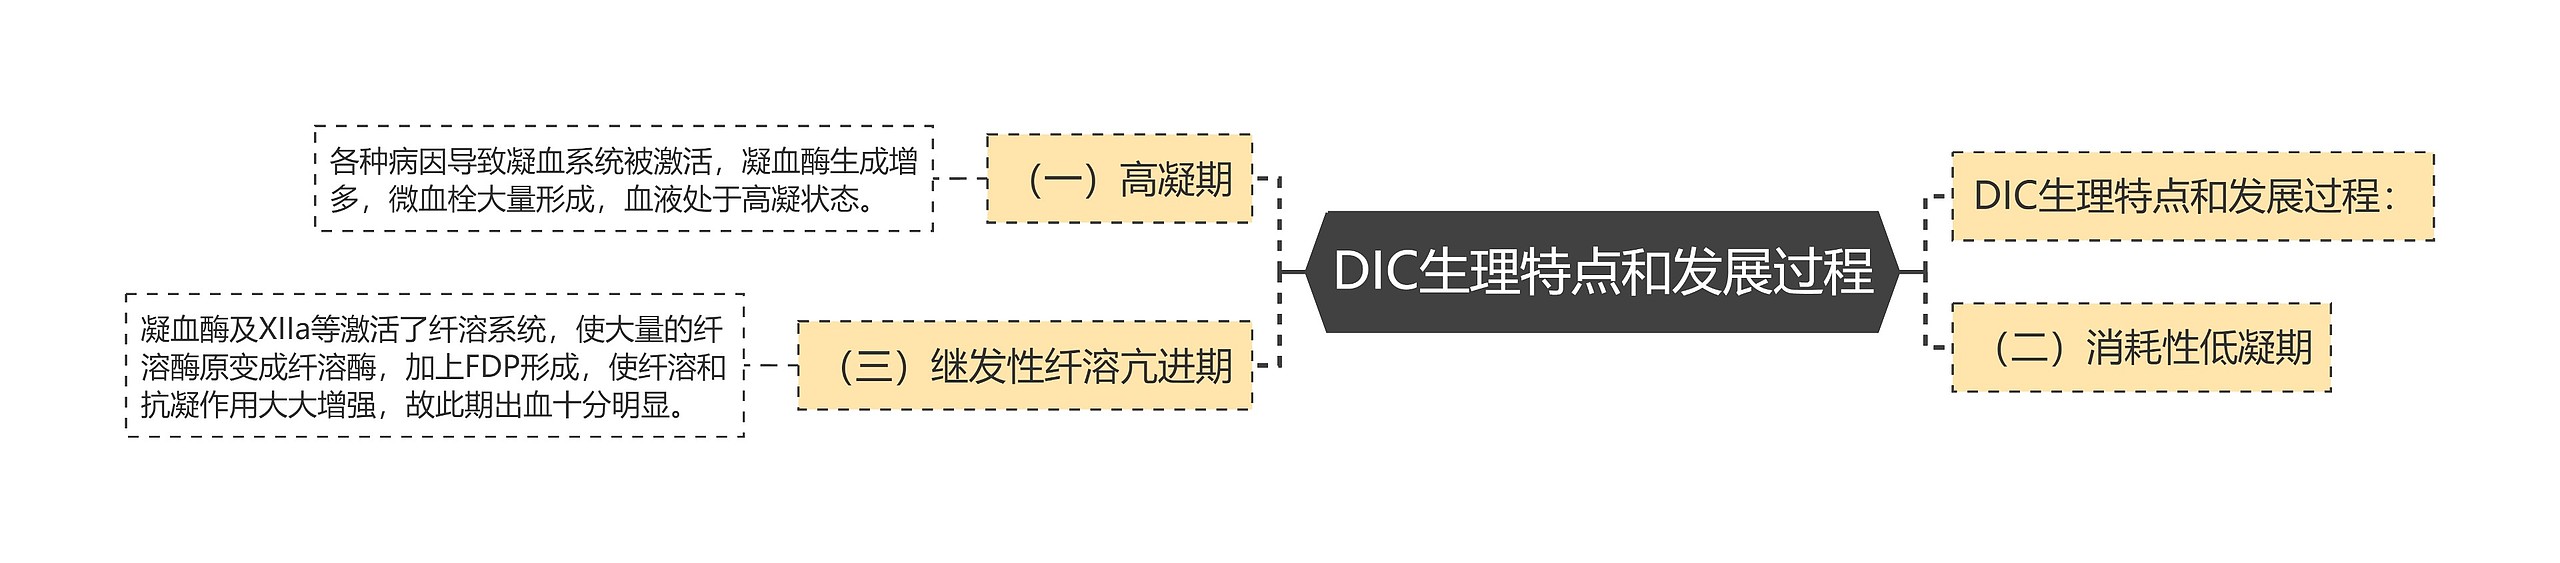 DIC生理特点和发展过程思维导图